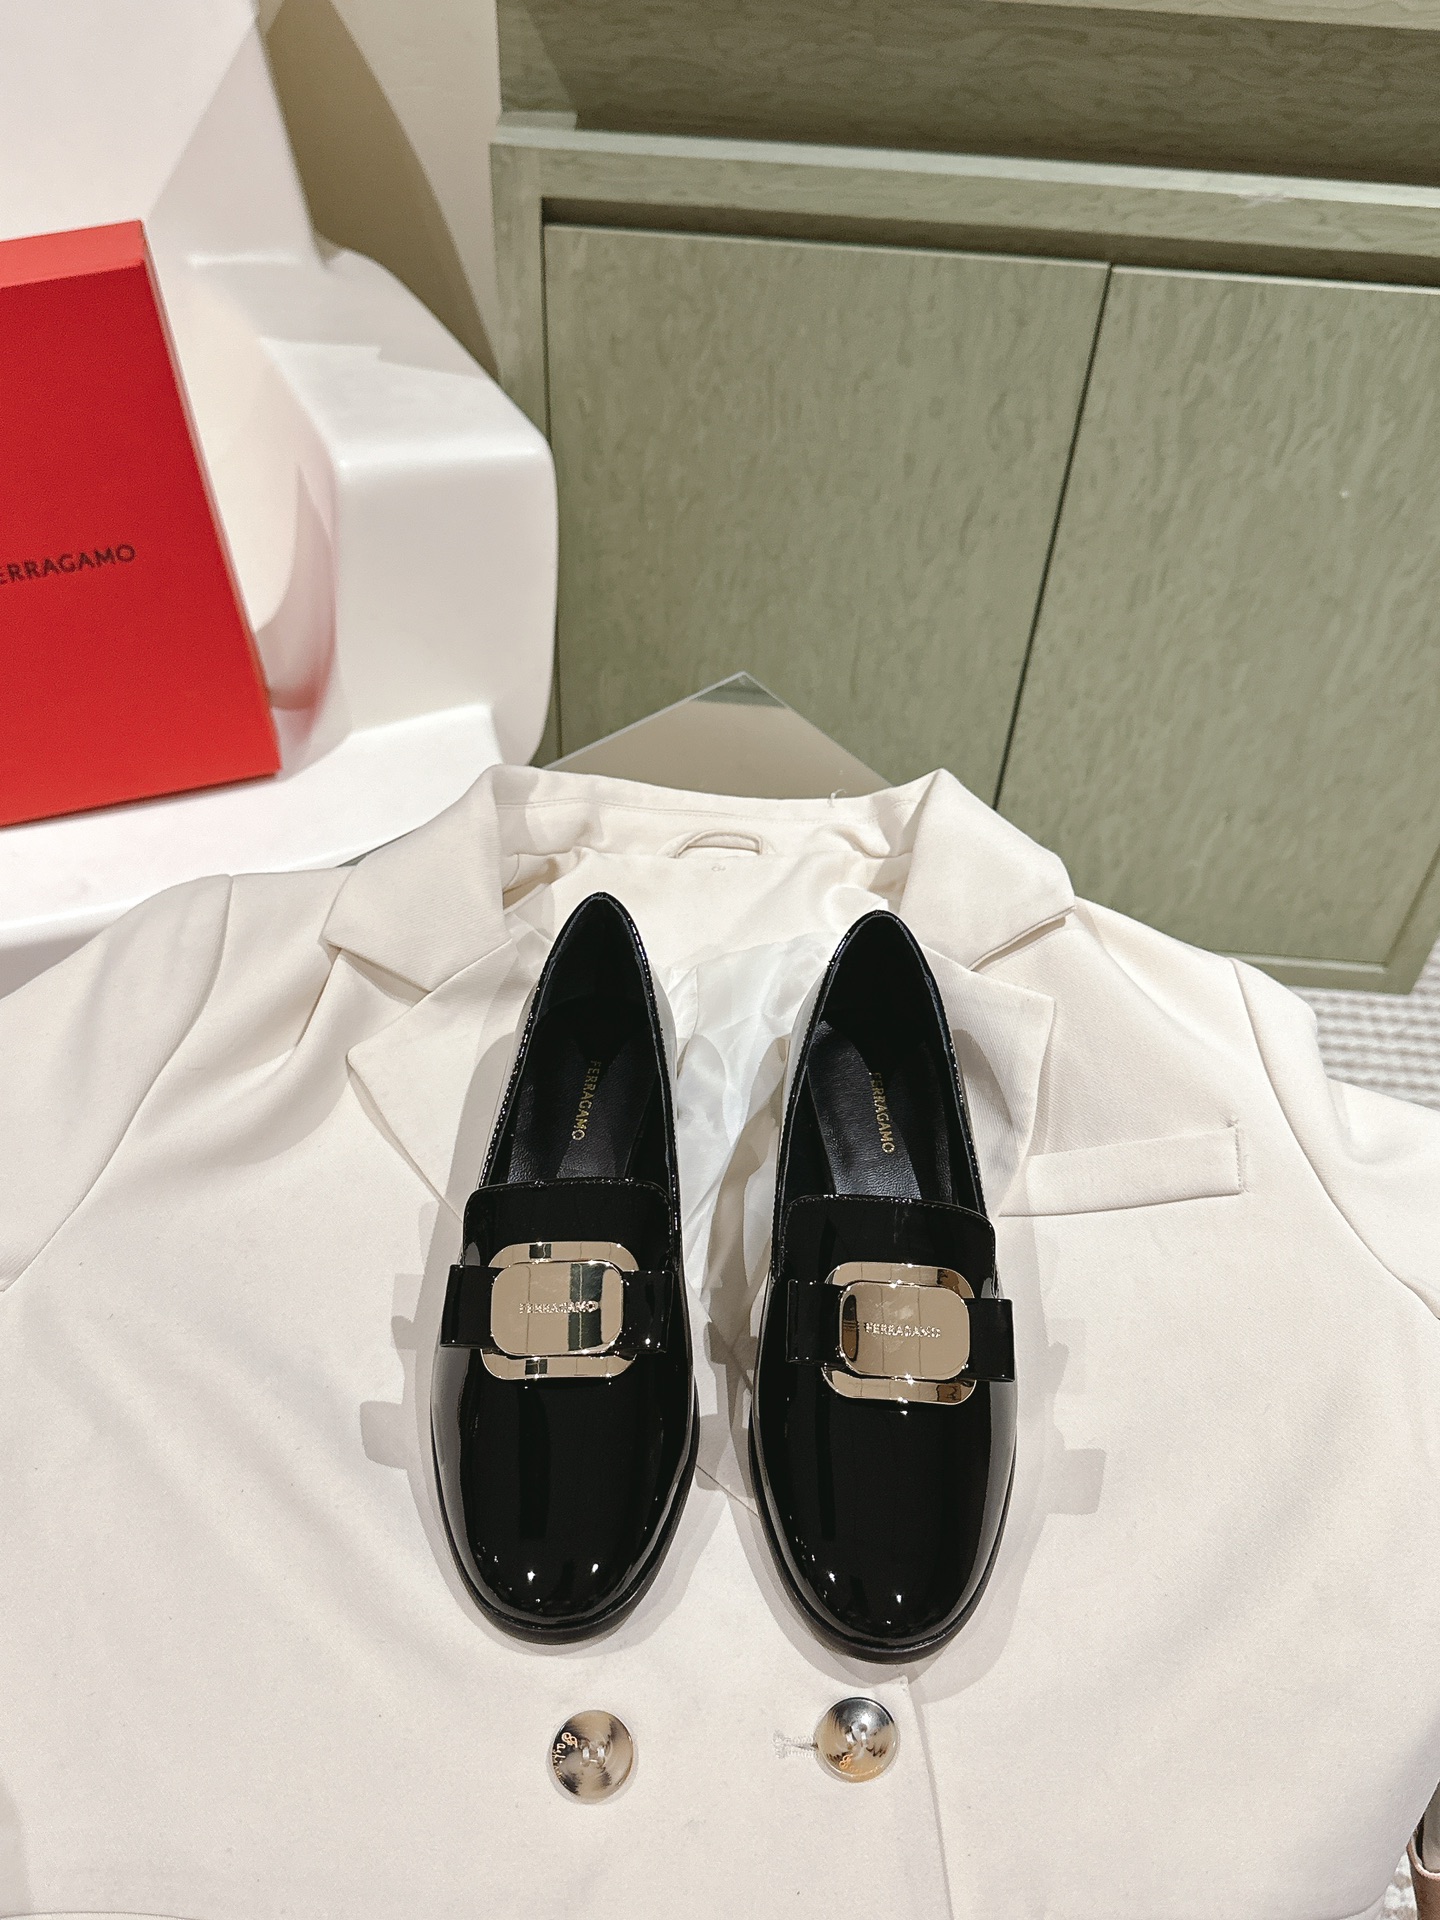 Ferragamo Chaussures Loafers Replice trouvé
 Quincaillerie en or Genuine Leather Peau de mouton Cuir verni